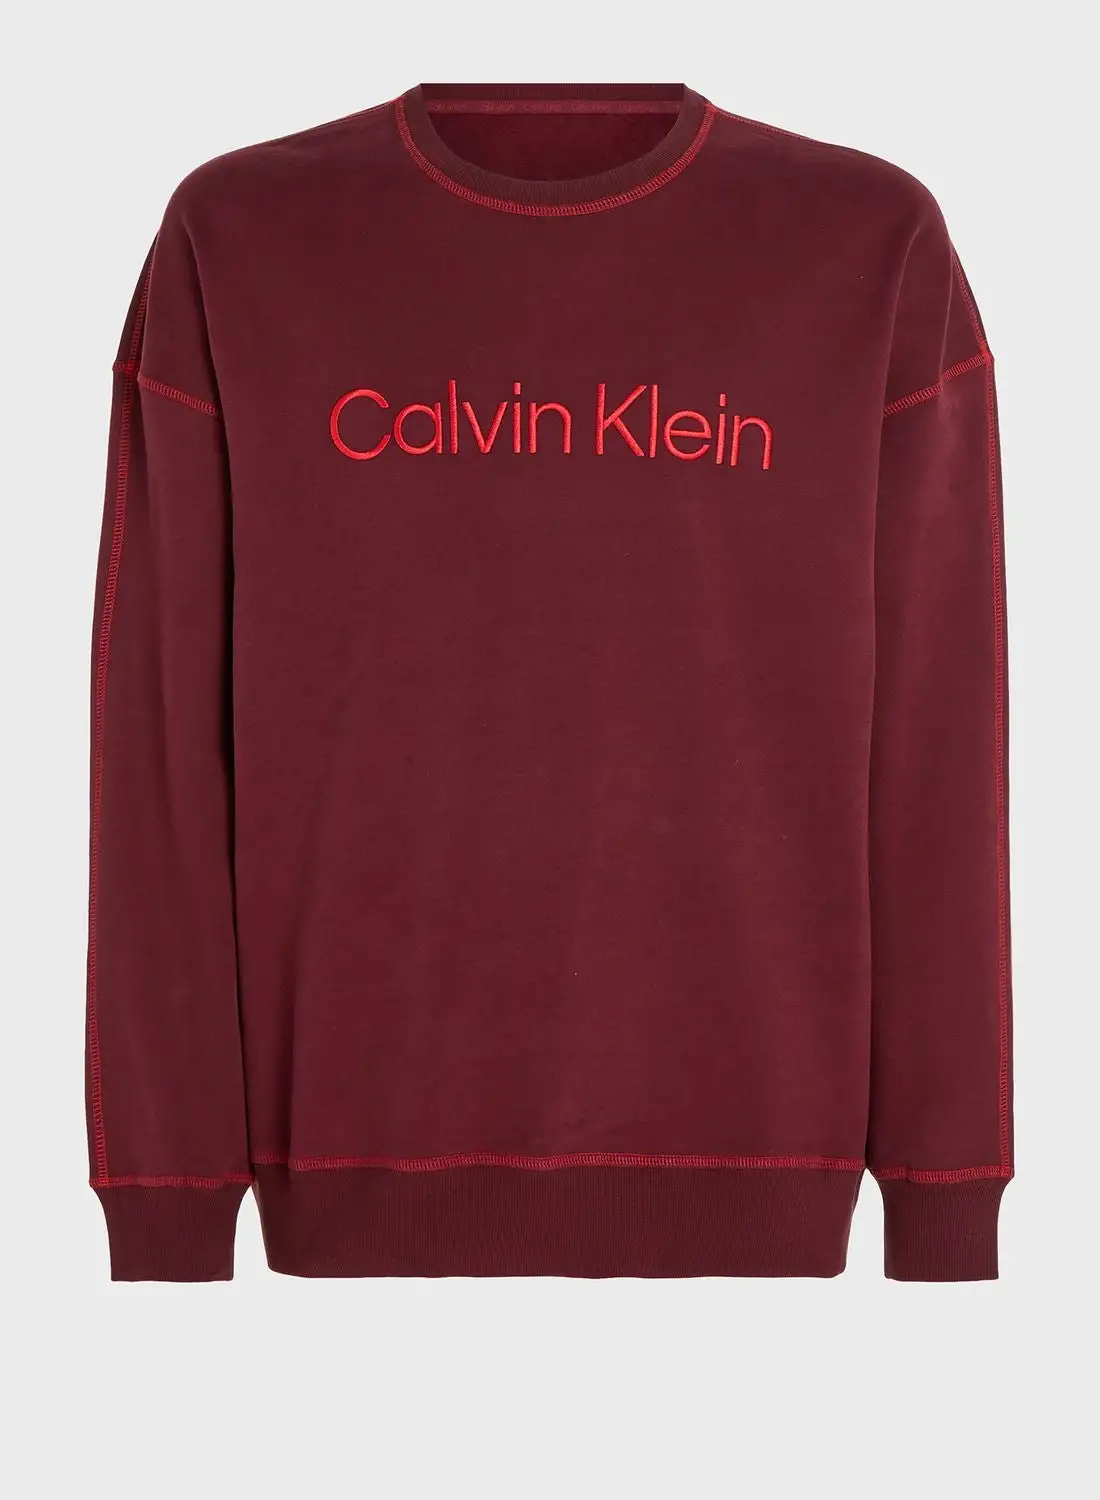 CALVIN KLEIN Essential Crew Neck Sweatshirt